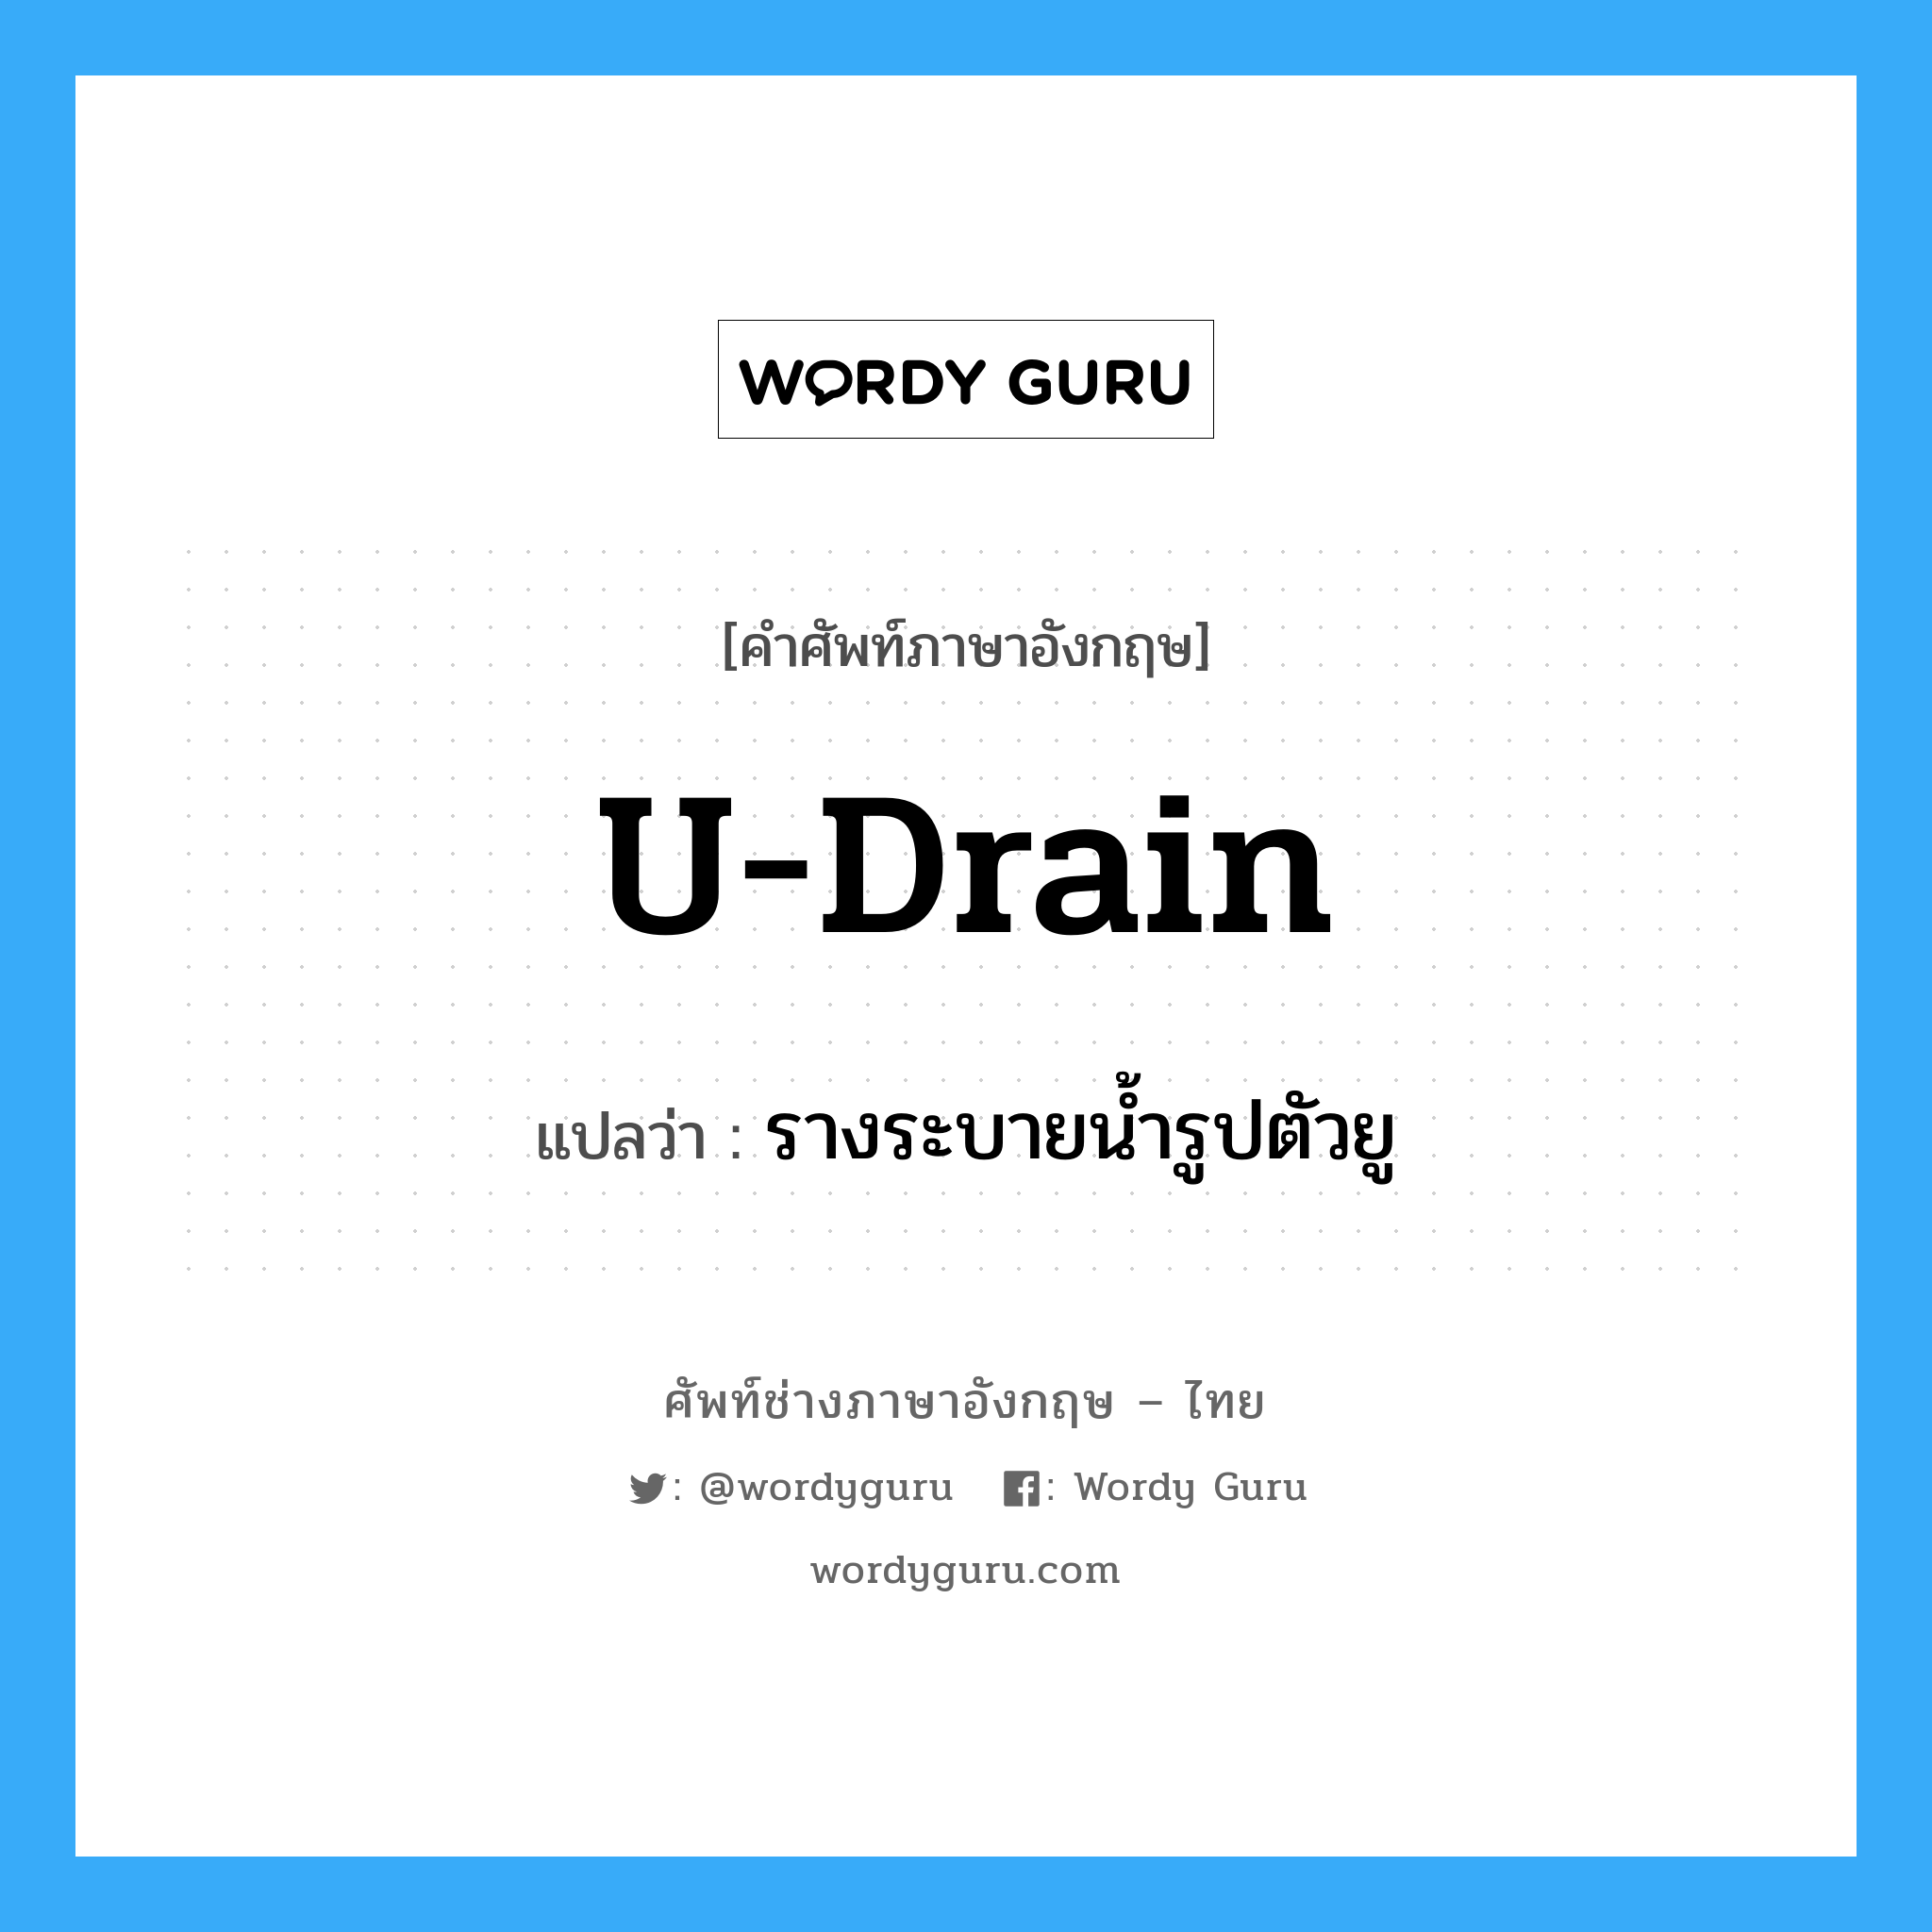 U-drain แปลว่า?, คำศัพท์ช่างภาษาอังกฤษ - ไทย U-drain คำศัพท์ภาษาอังกฤษ U-drain แปลว่า รางระบายน้ำรูปตัวยู